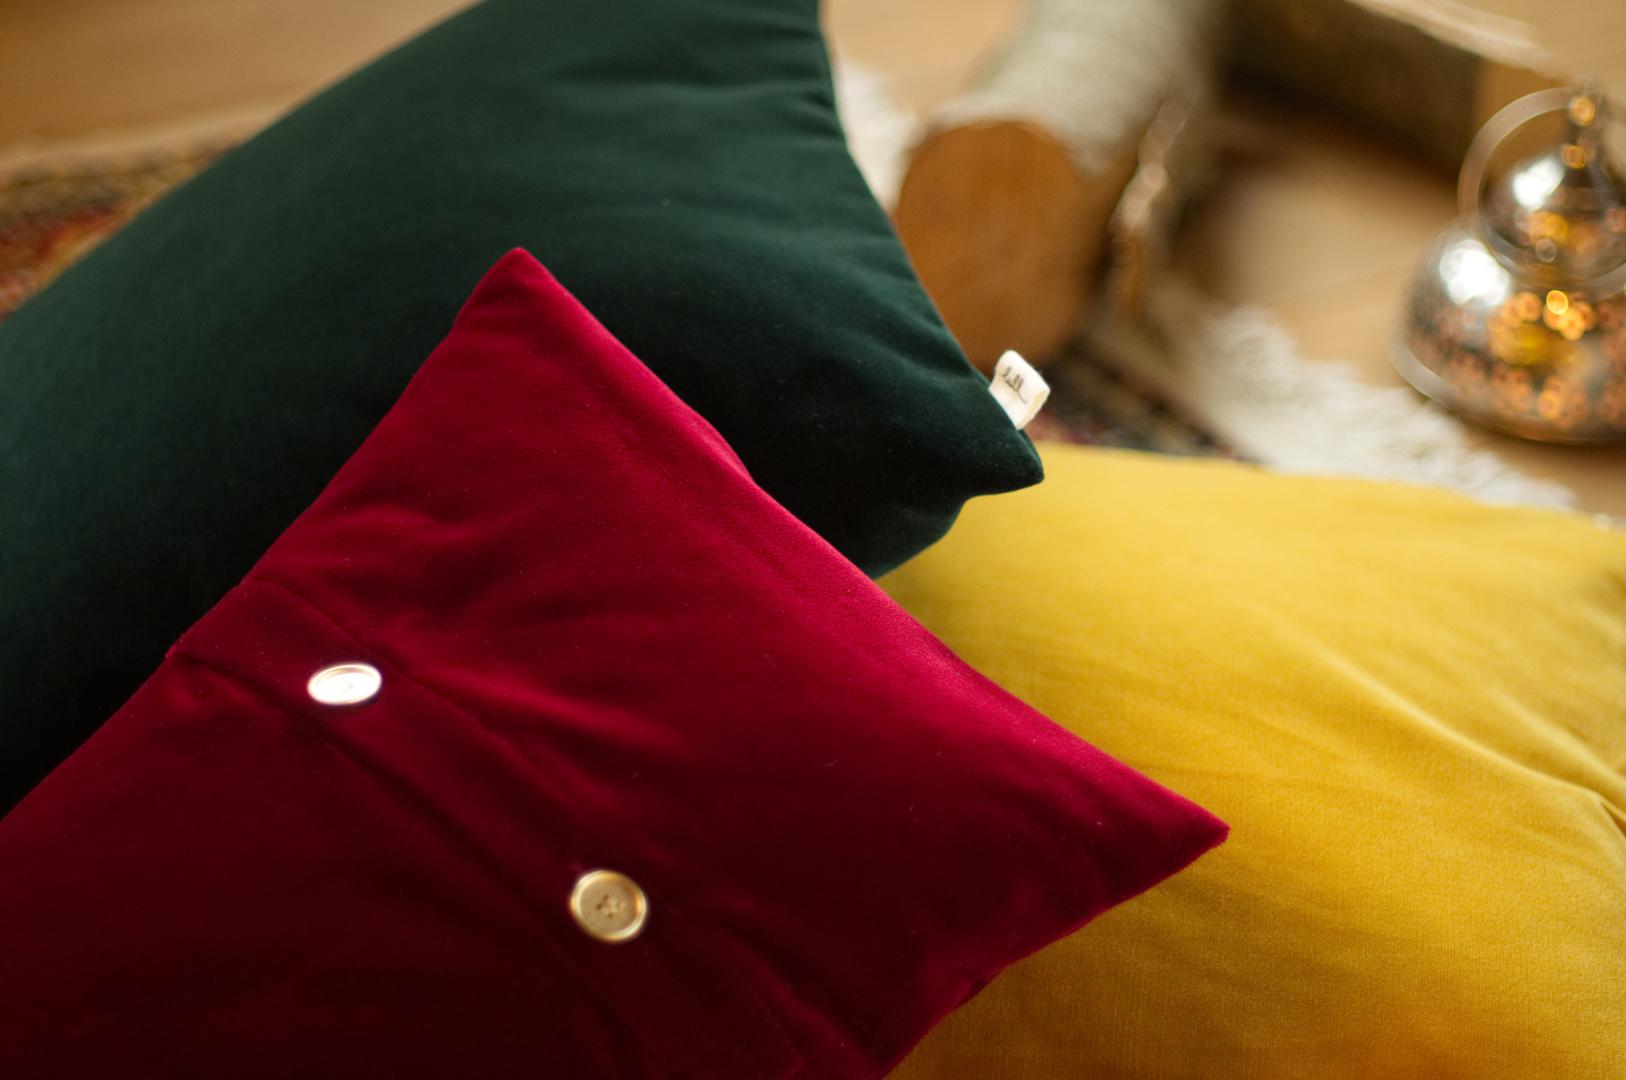 Obucite svoje jastučiće u ove očaravajuće jastučnice koje su ukras prostoru